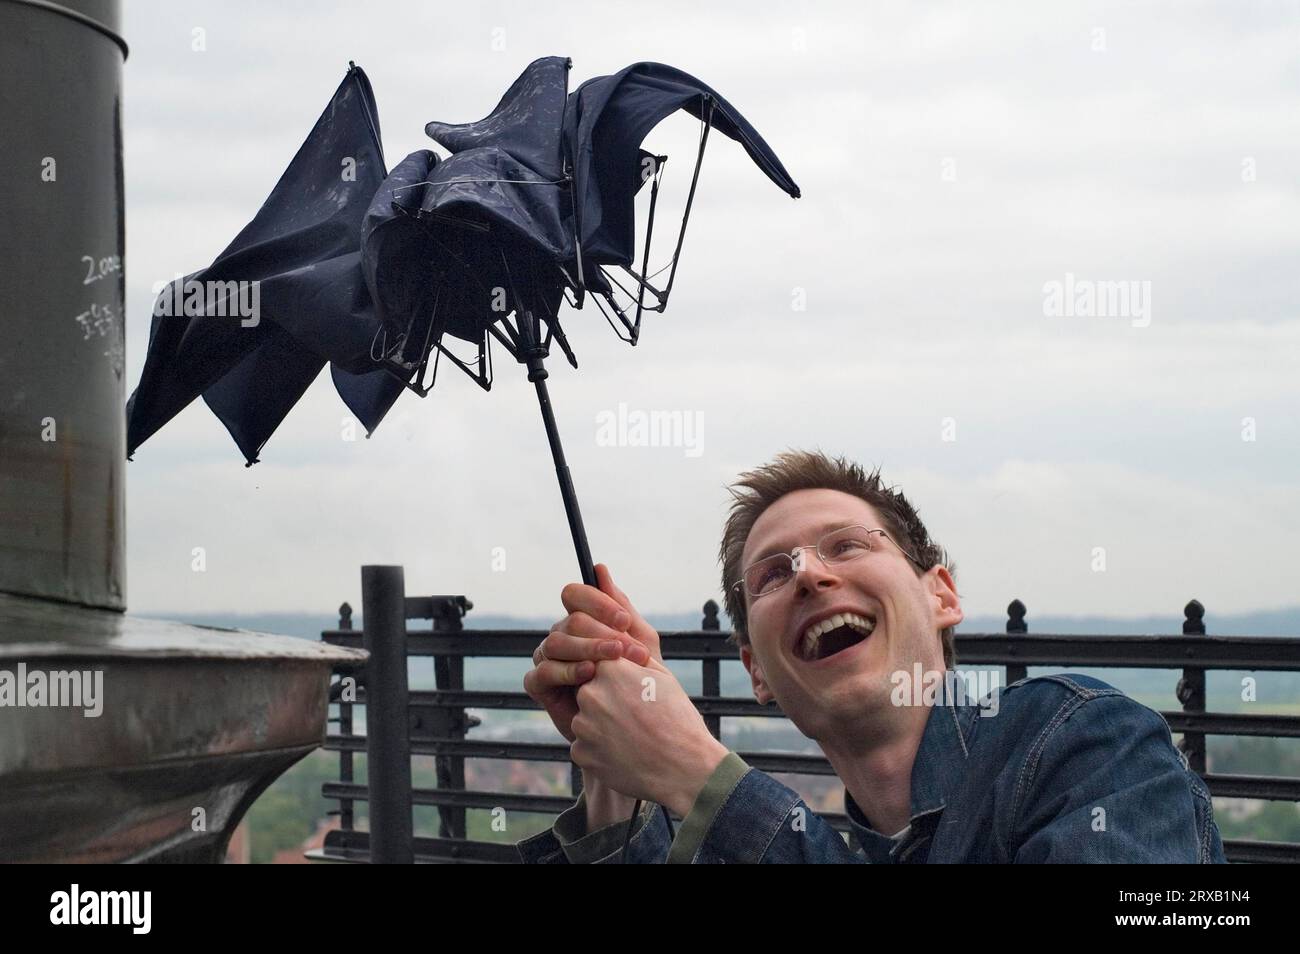 Manipulation ludique d'un jeune homme lors de l'effondrement d'un parapluie bon marché par un squall sur une tour Banque D'Images